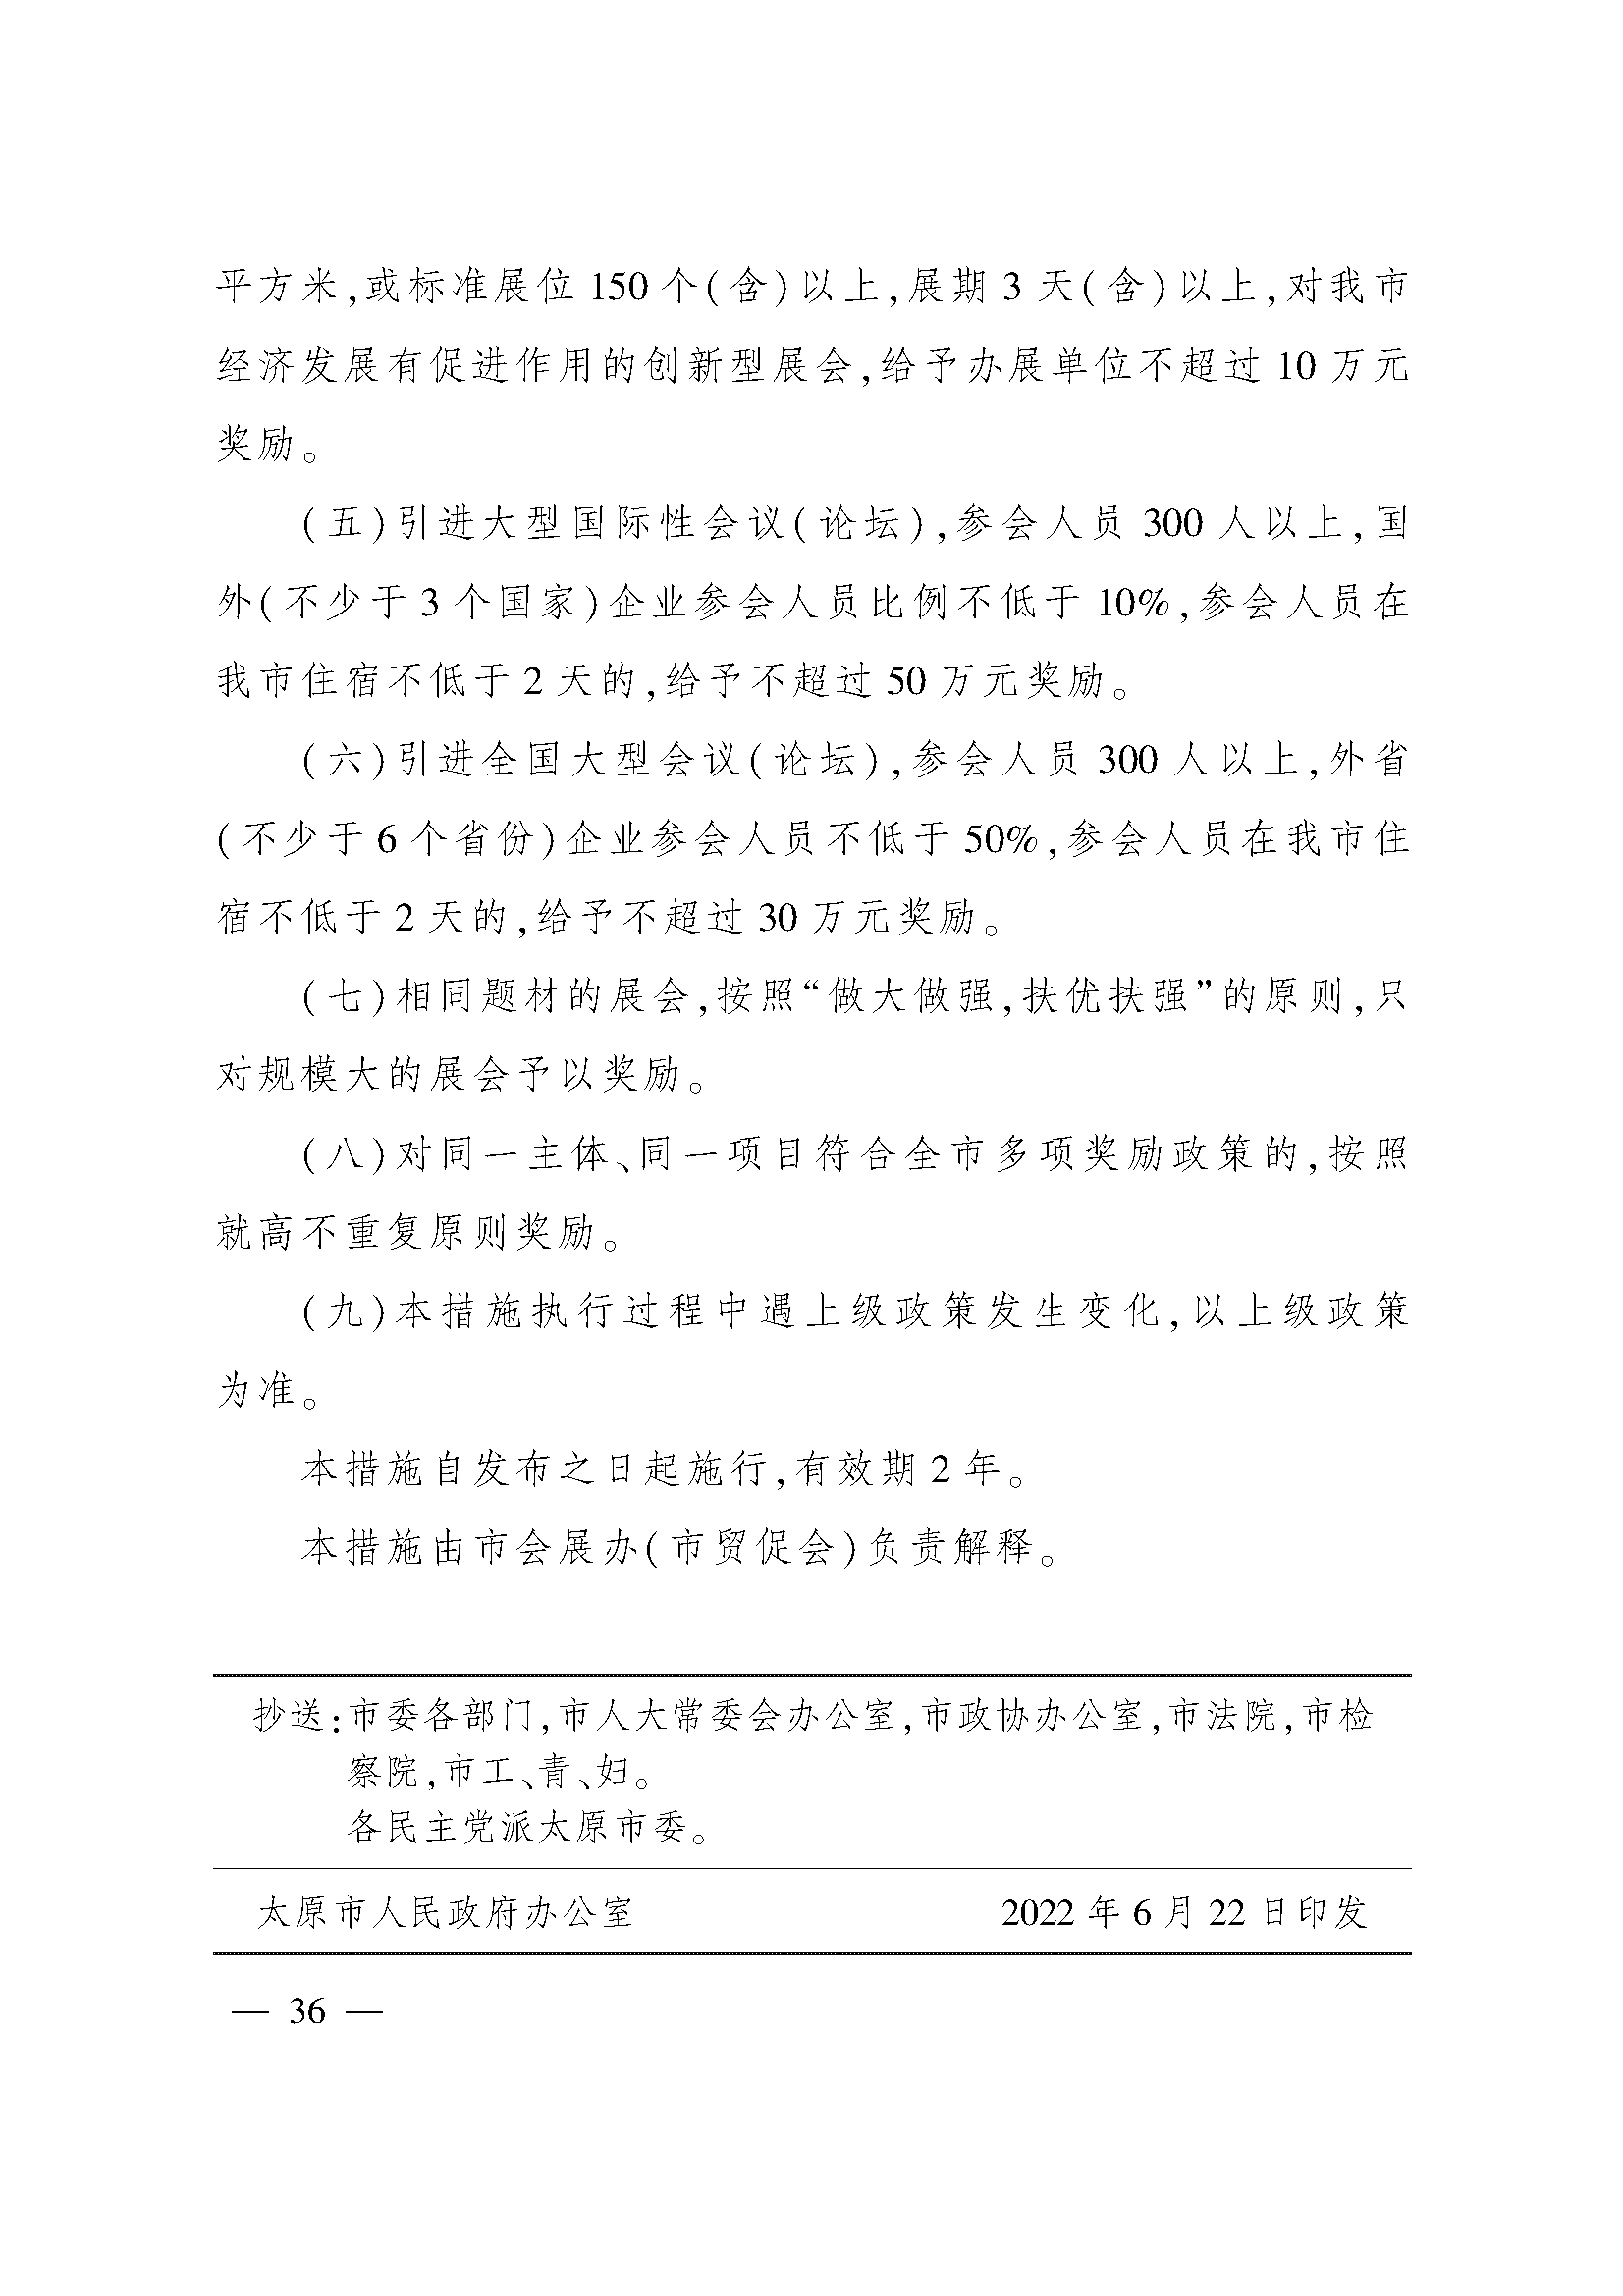 太原市人民政府办公室关于印发太原市招商引资若干措施的通知(图36)